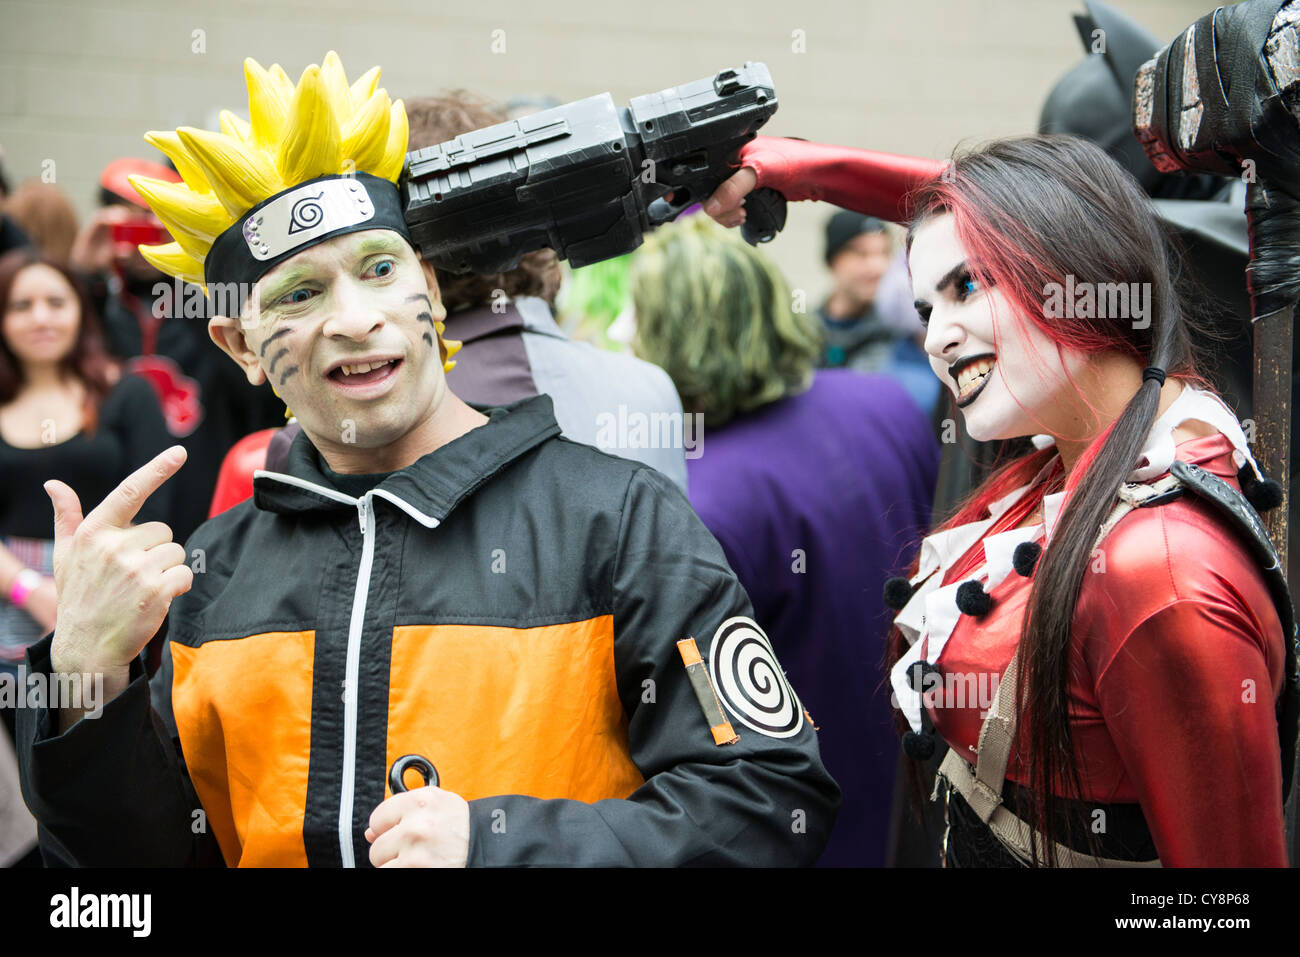 Londres, Reino Unido - 28 de octubre: Cosplayers suplantando Naruto y Harley Quinn posar para fotógrafos en la Comicon Londres MCM Expo. Foto de stock